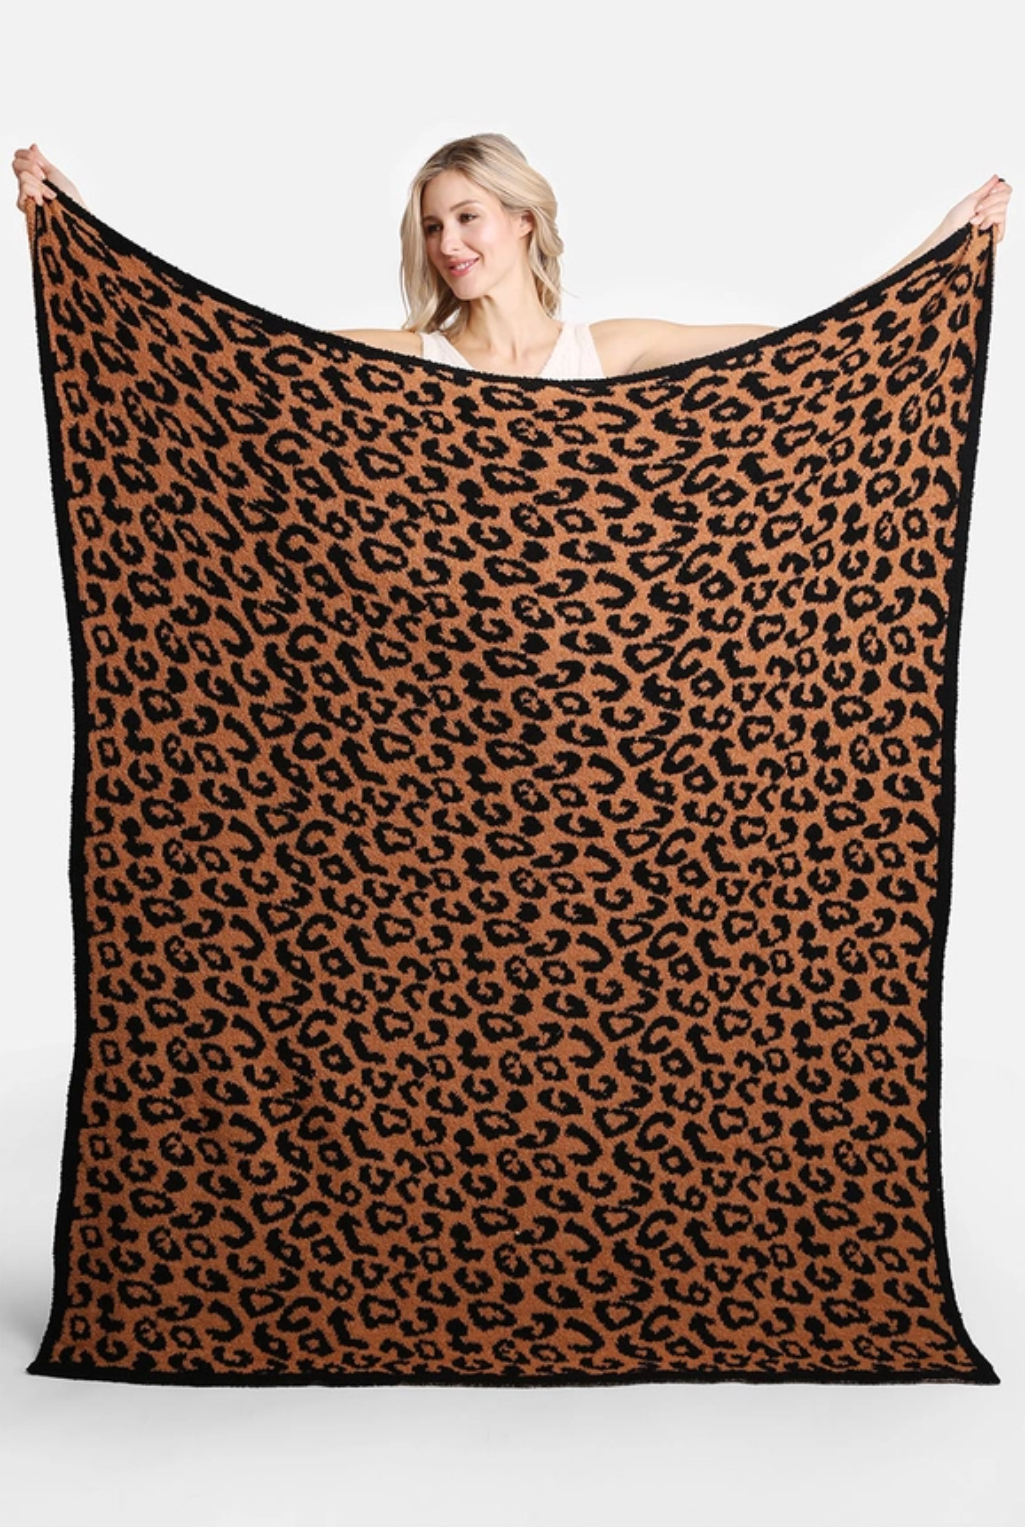 Leopard Blanket - Black